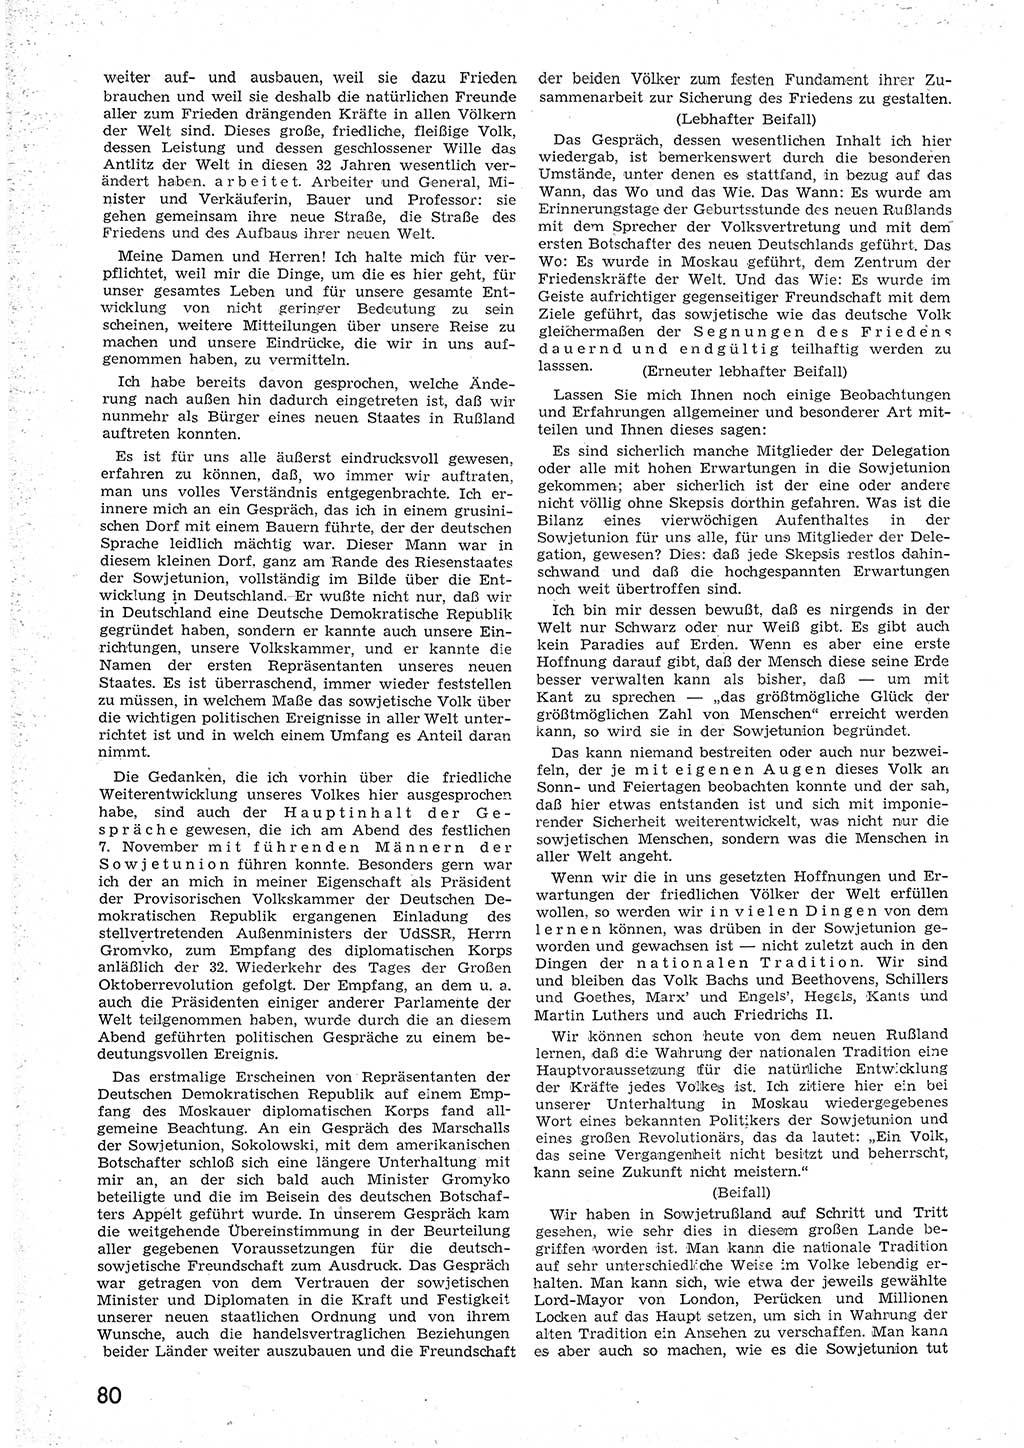 Provisorische Volkskammer (VK) der Deutschen Demokratischen Republik (DDR) 1949-1950, Dokument 92 (Prov. VK DDR 1949-1950, Dok. 92)